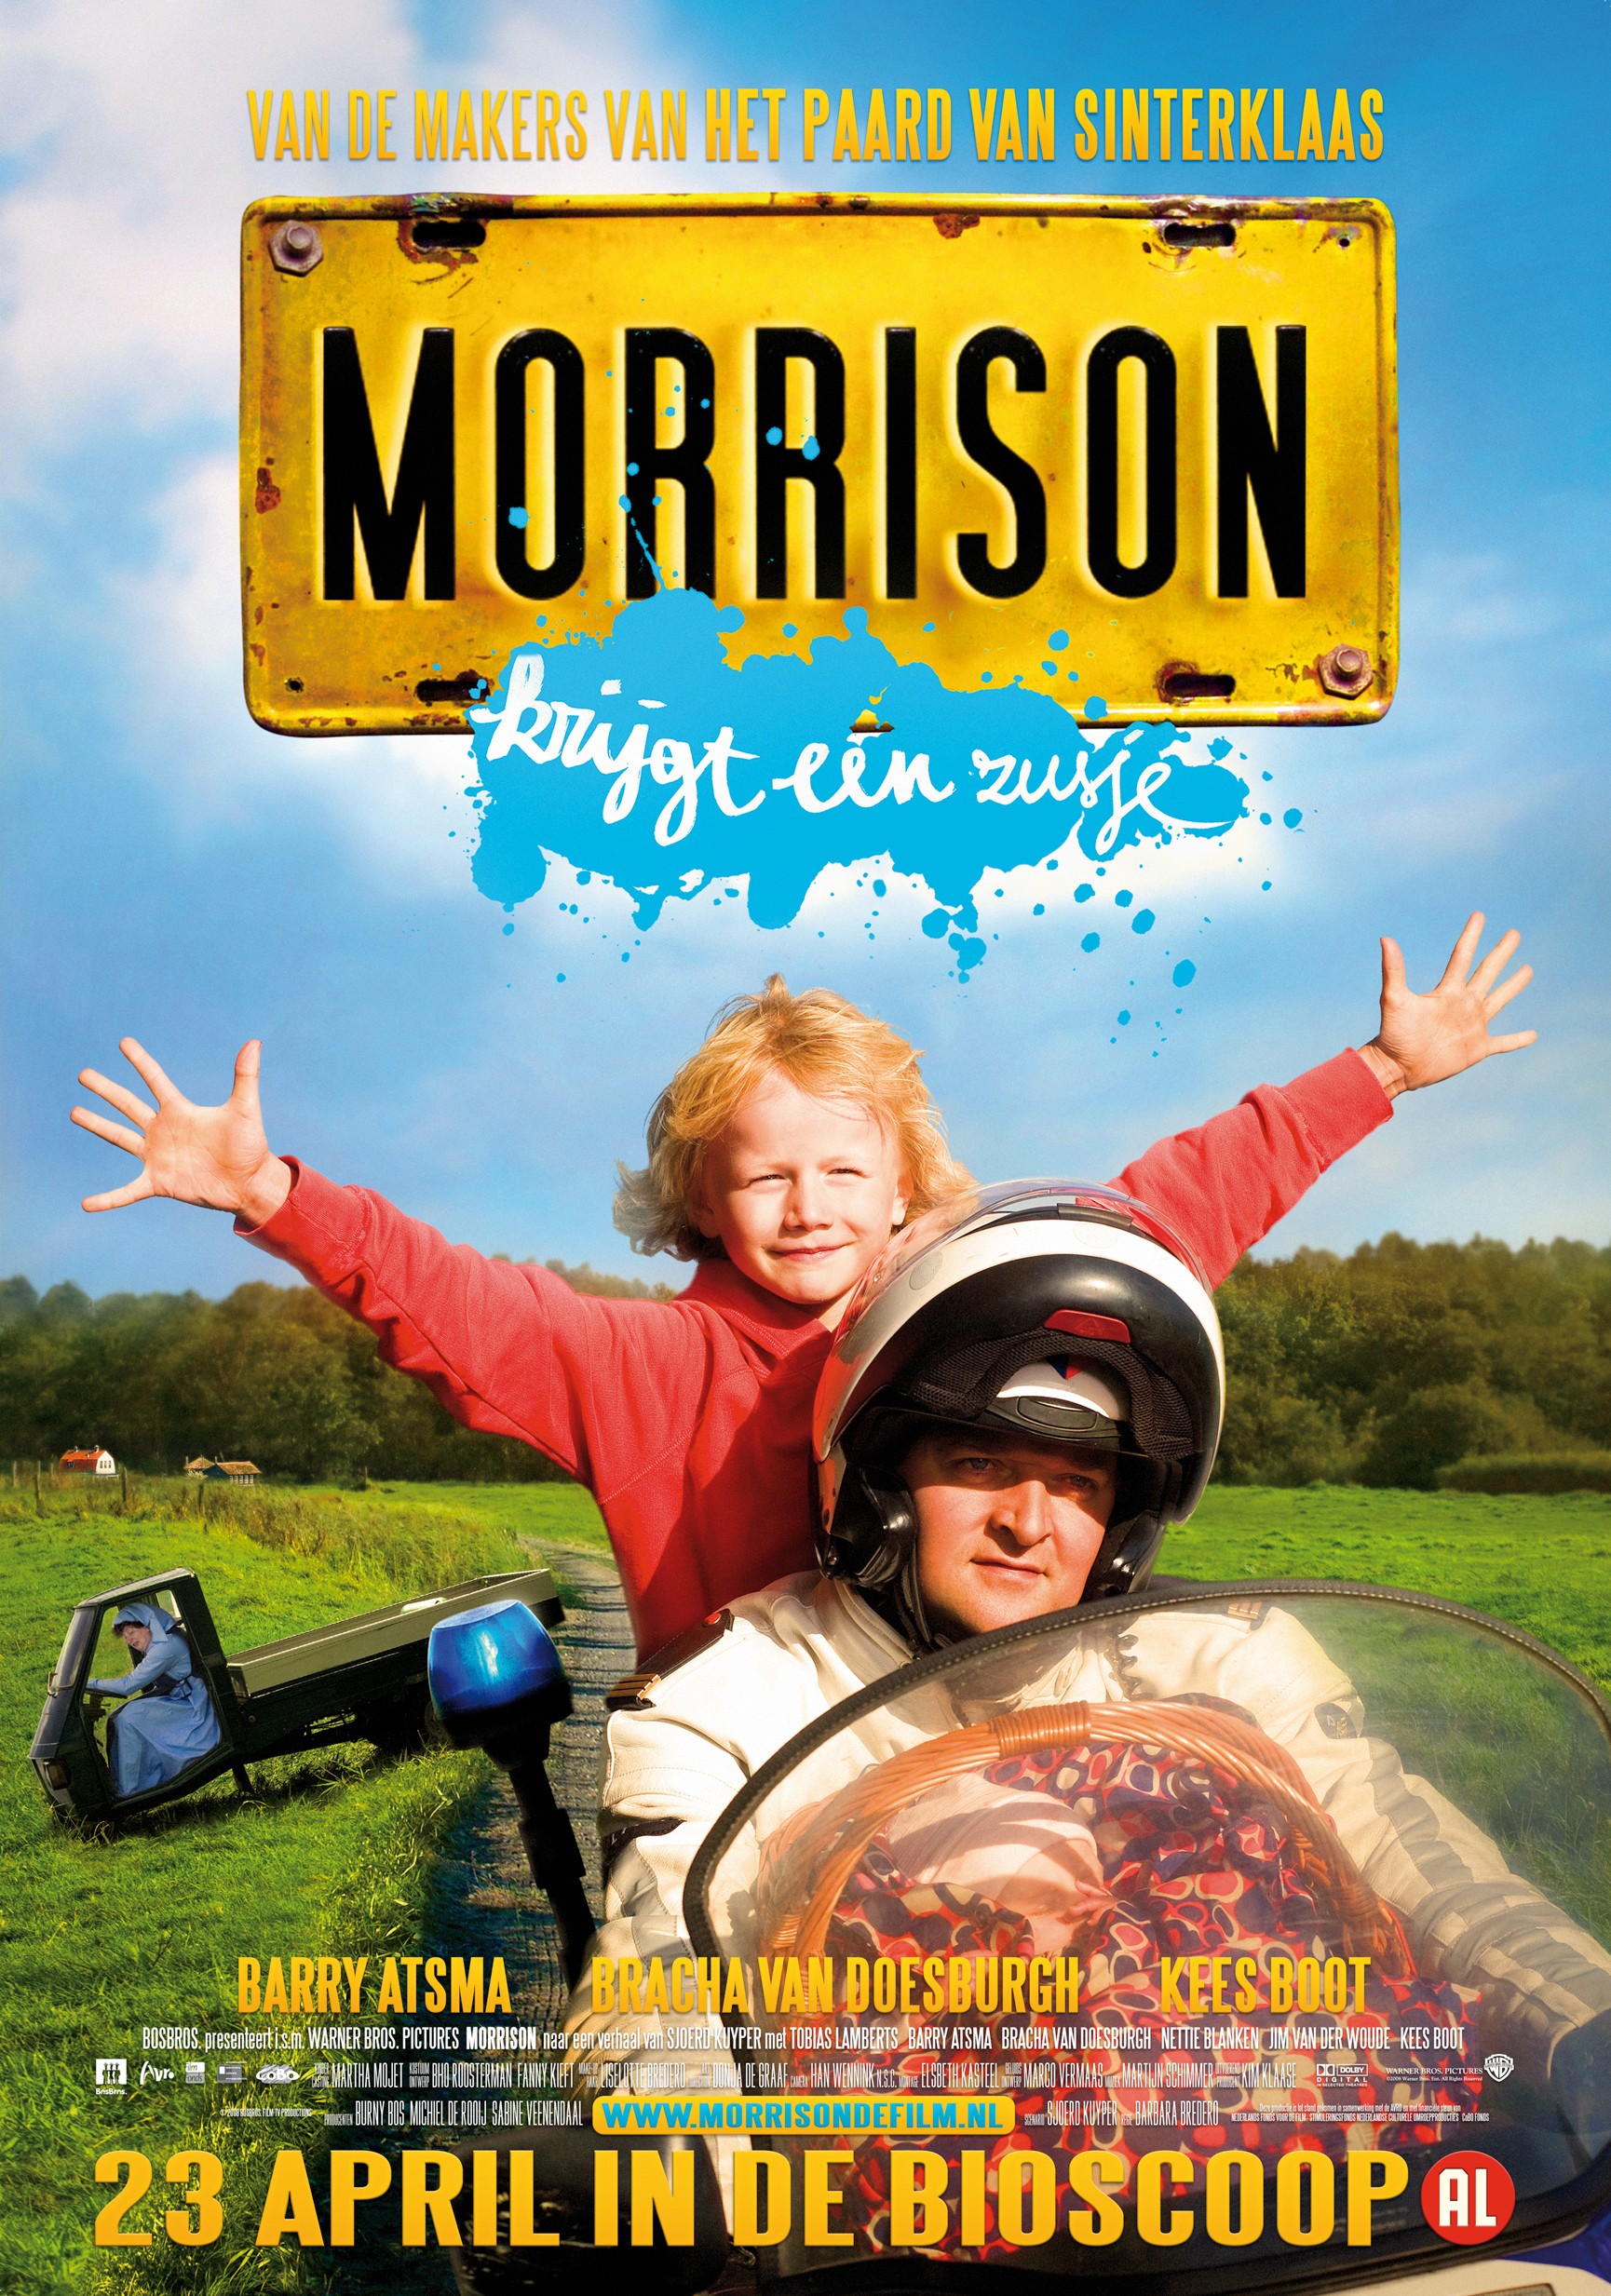 Mega Sized Movie Poster Image for Morrison krijgt een zusje 